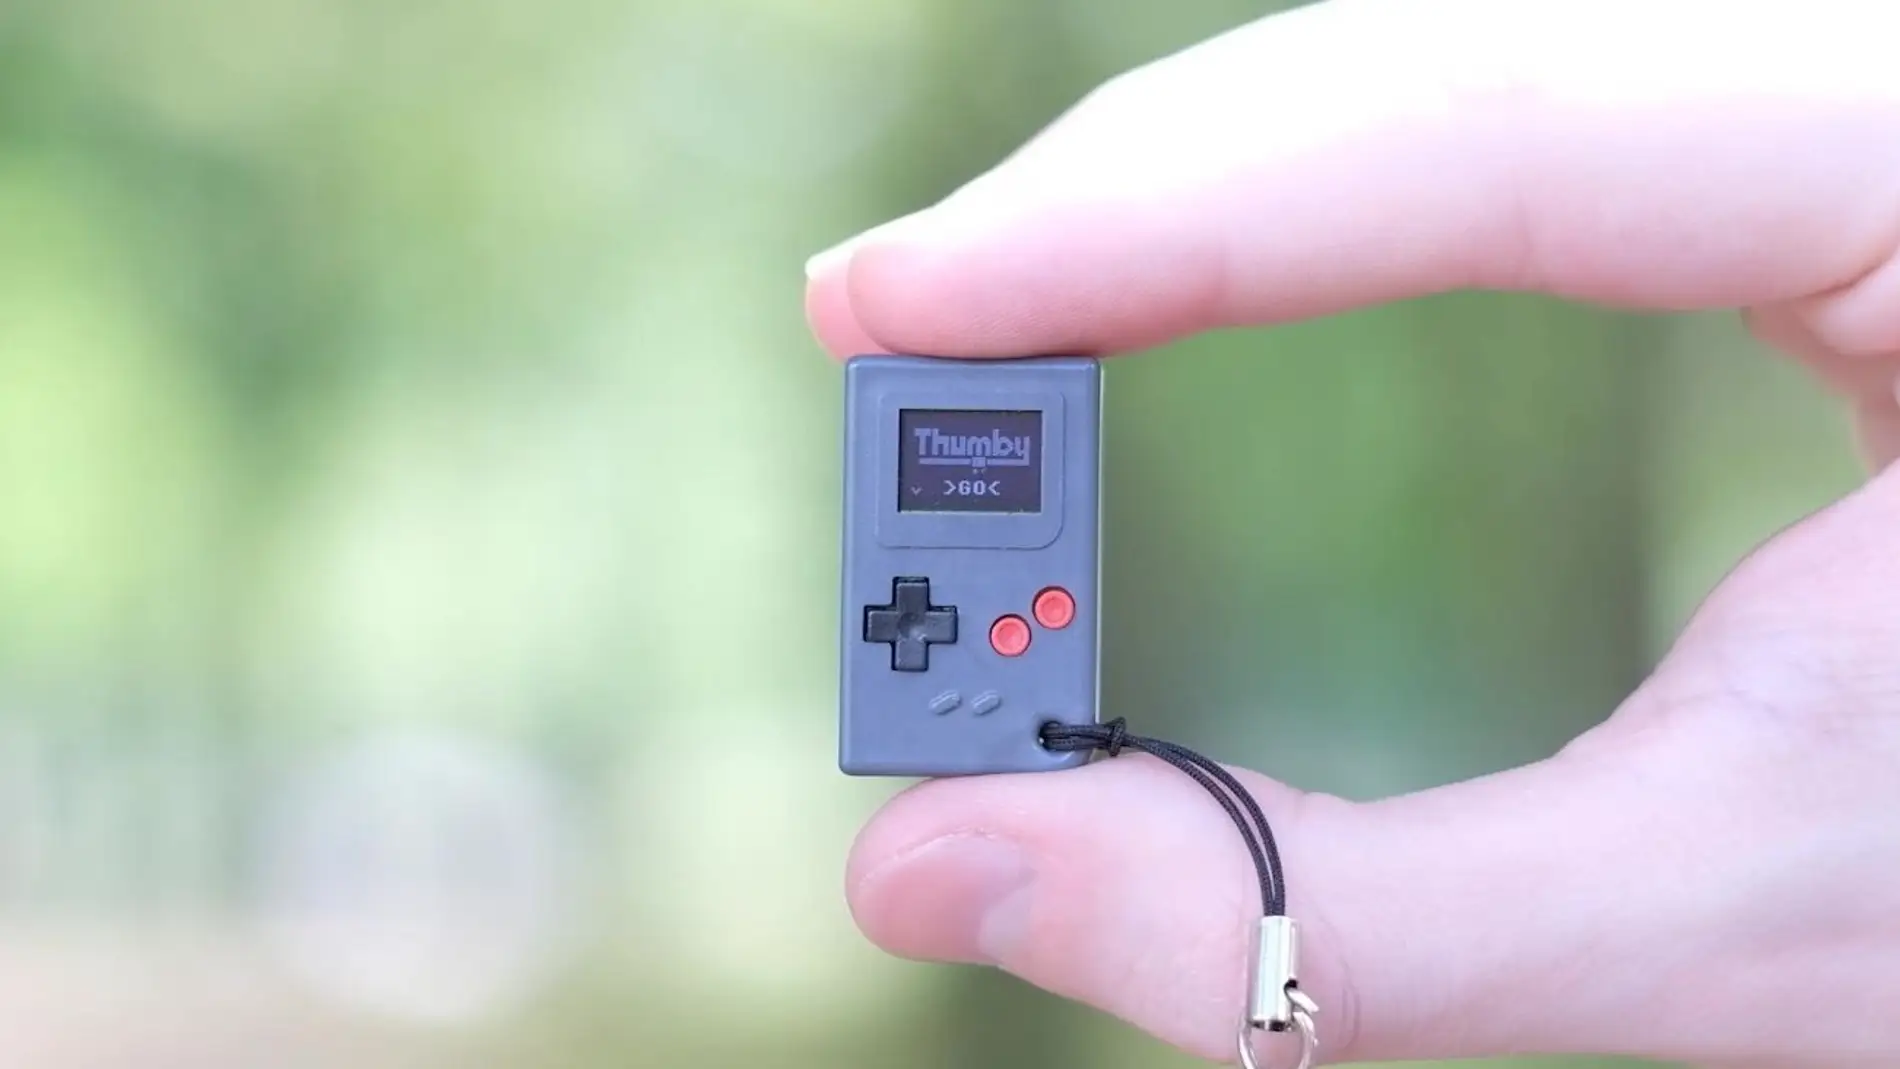 Más pequeña que un llavero y al estilo de Game Boy: ya puedes comprar la consola más diminuta del mundo